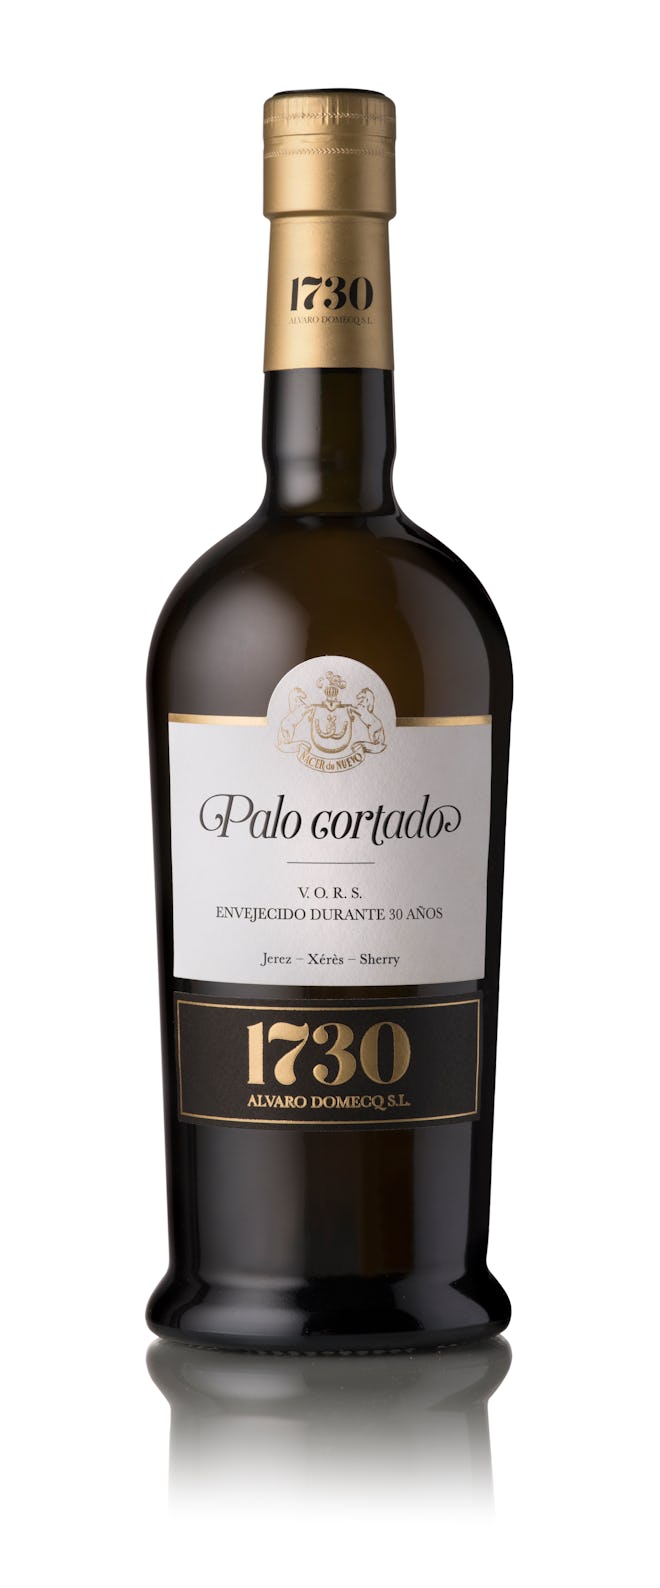 1730 Palo Cortado VORS Sherry